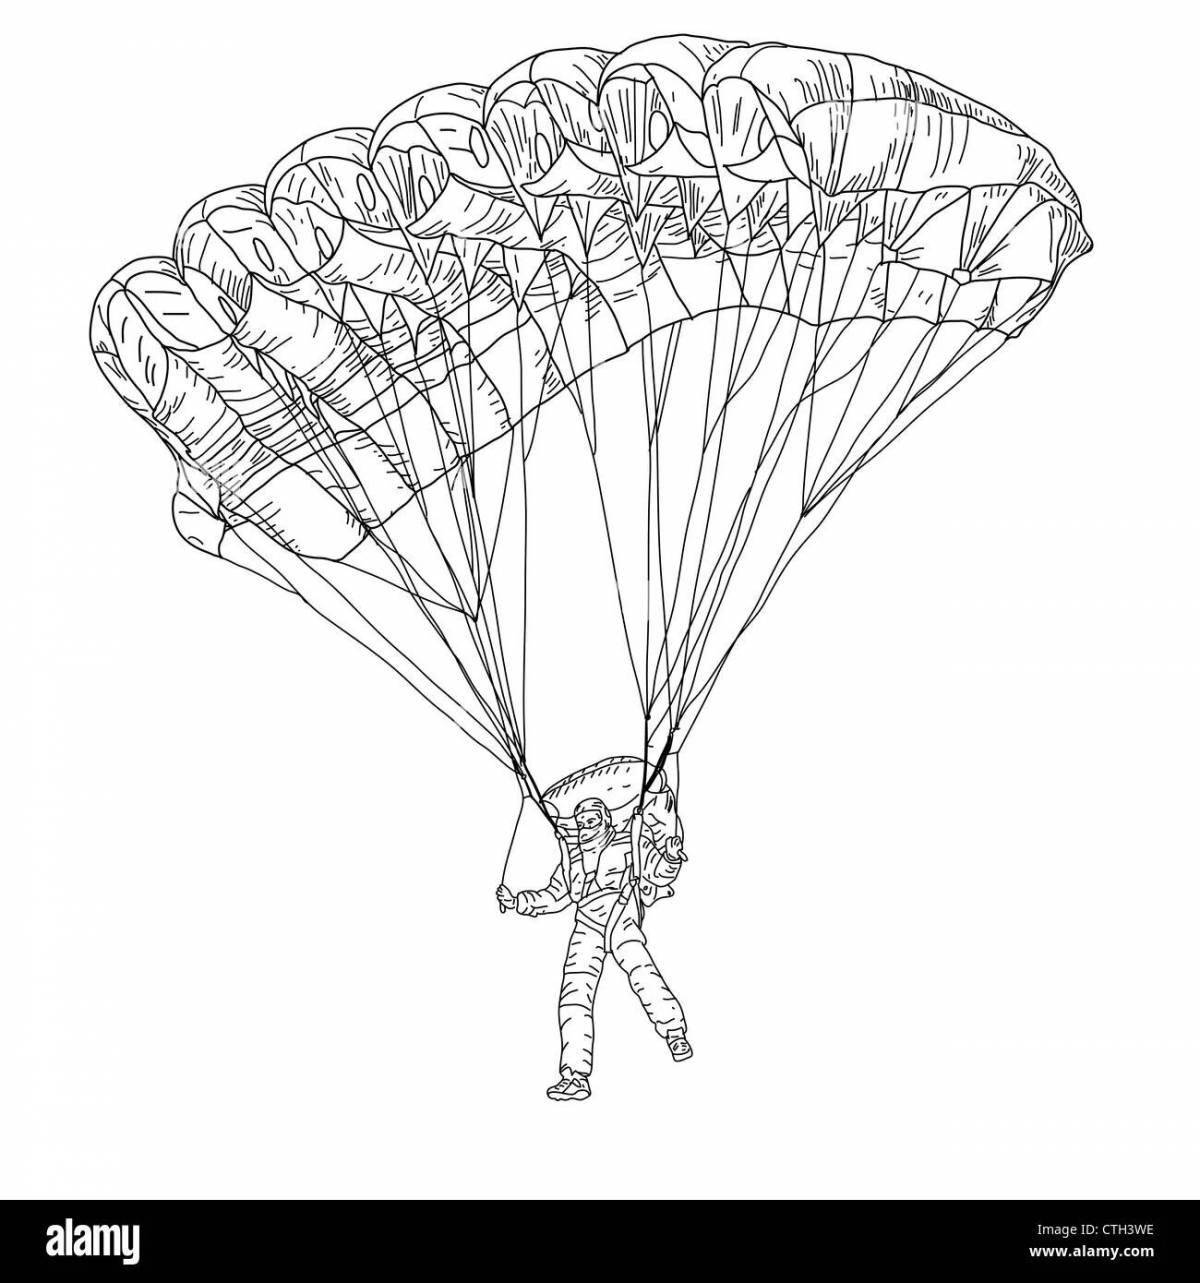 Забавная раскраска военного парашютиста для детей